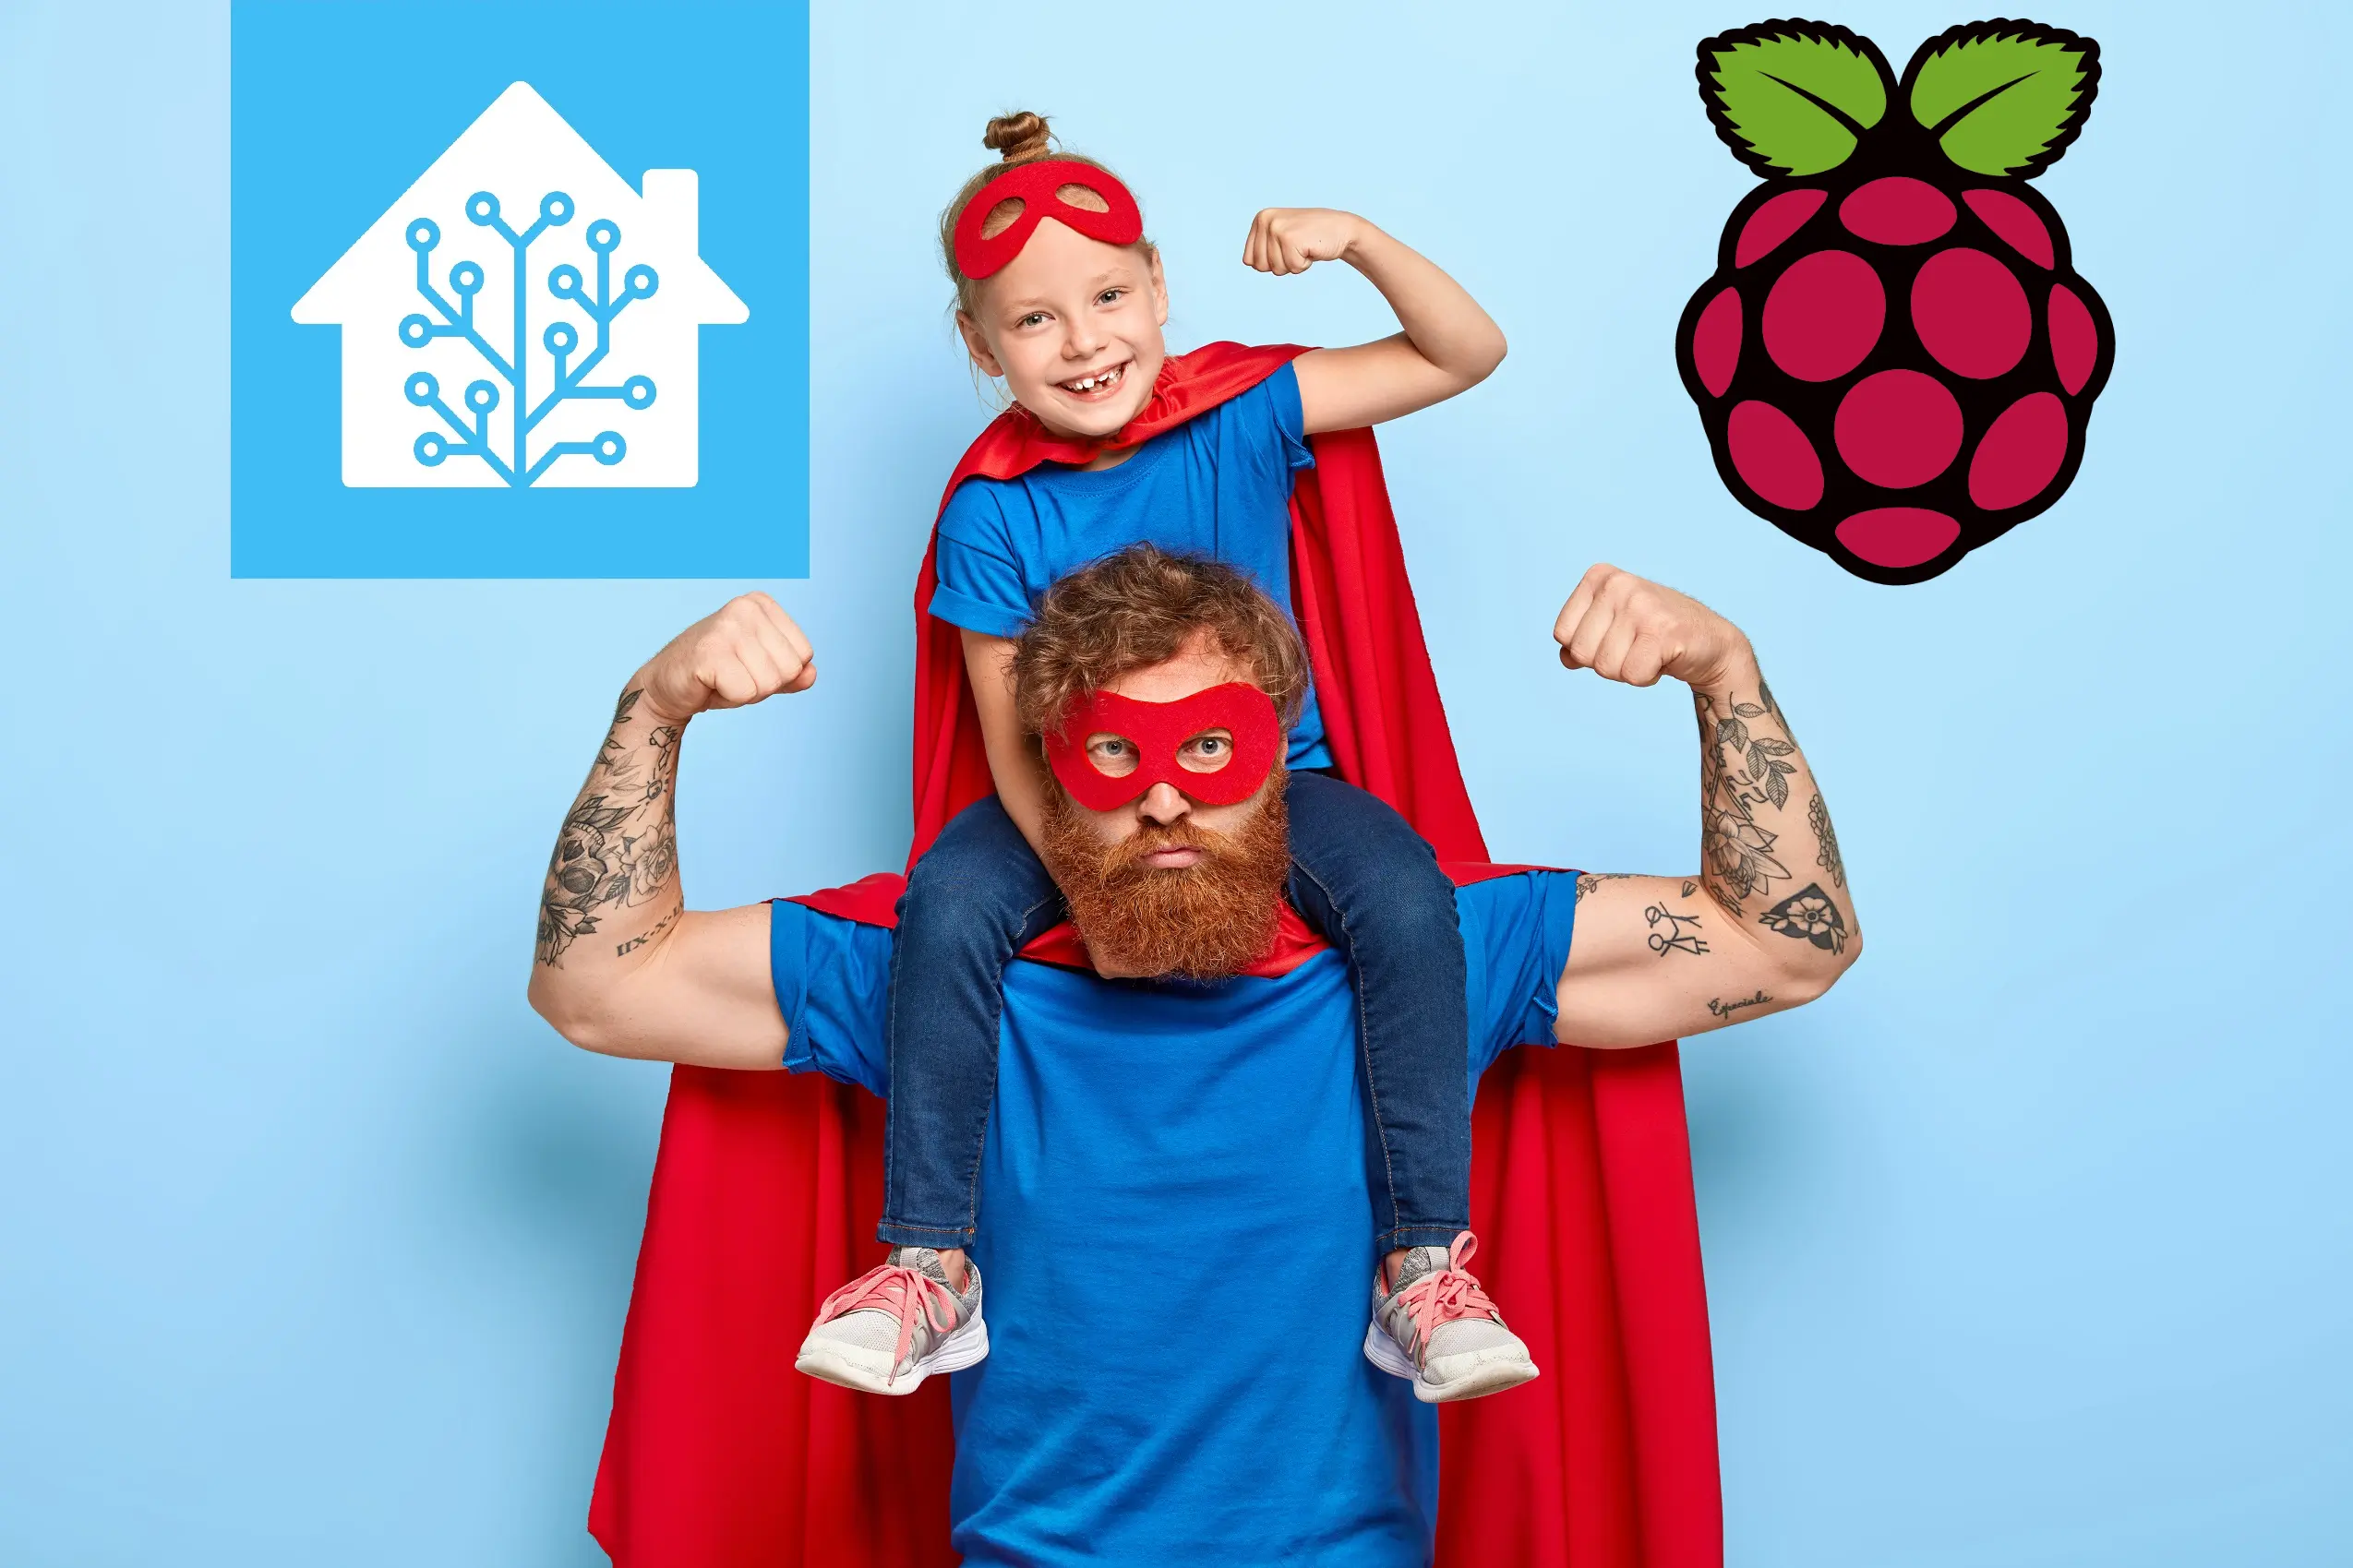 Home Assistant Raspberry Pi: come installare guida passo passo